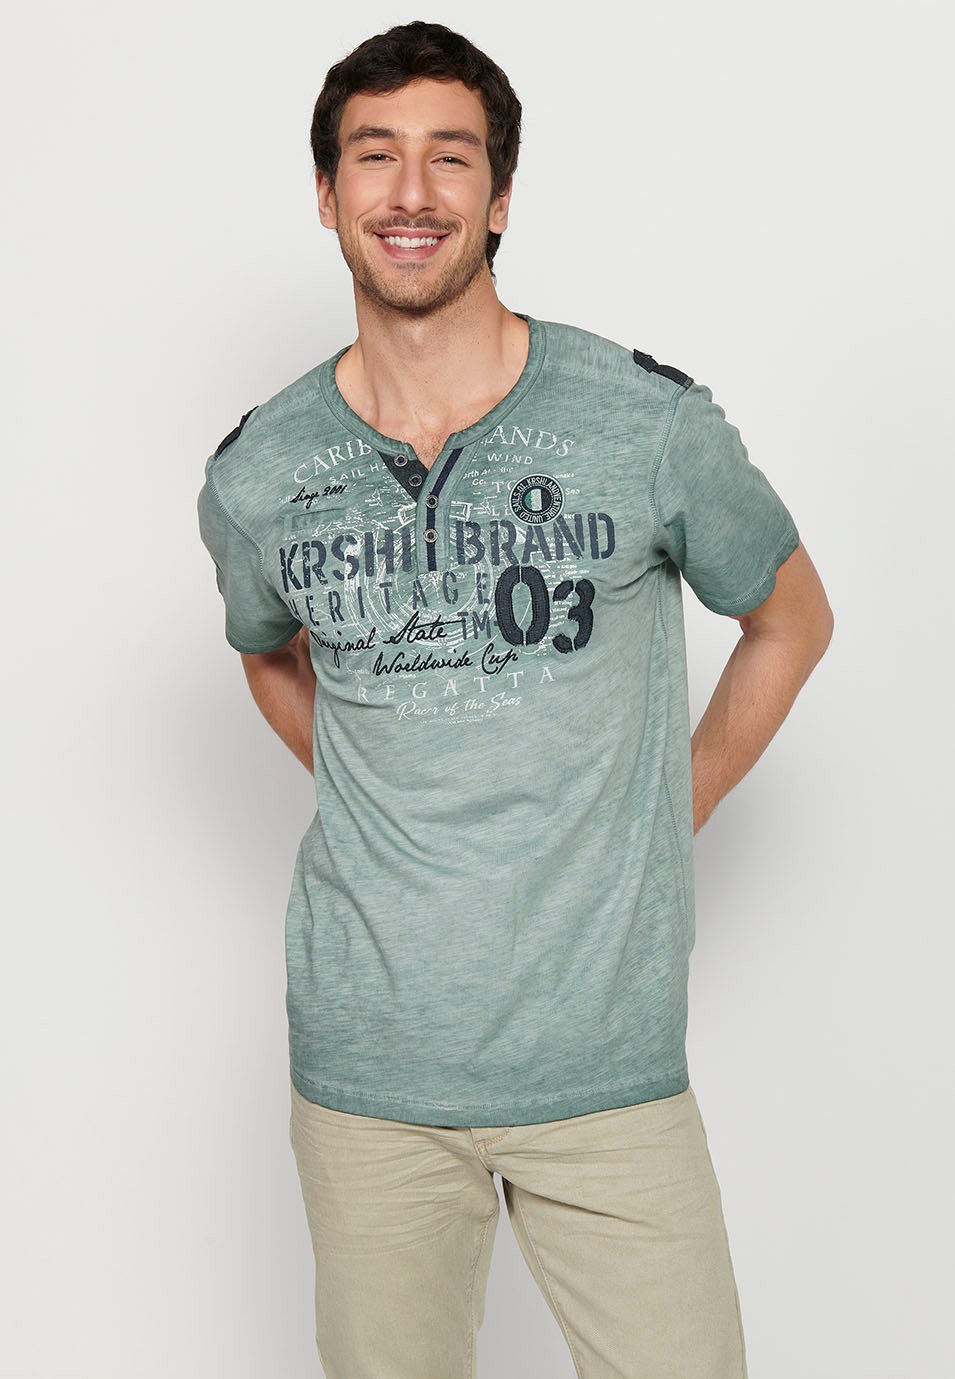 Kurzärmliges Herren-T-Shirt aus Baumwolle mit Rundhalsausschnitt, geknöpfter Öffnung und khakifarbenem Detail vorne